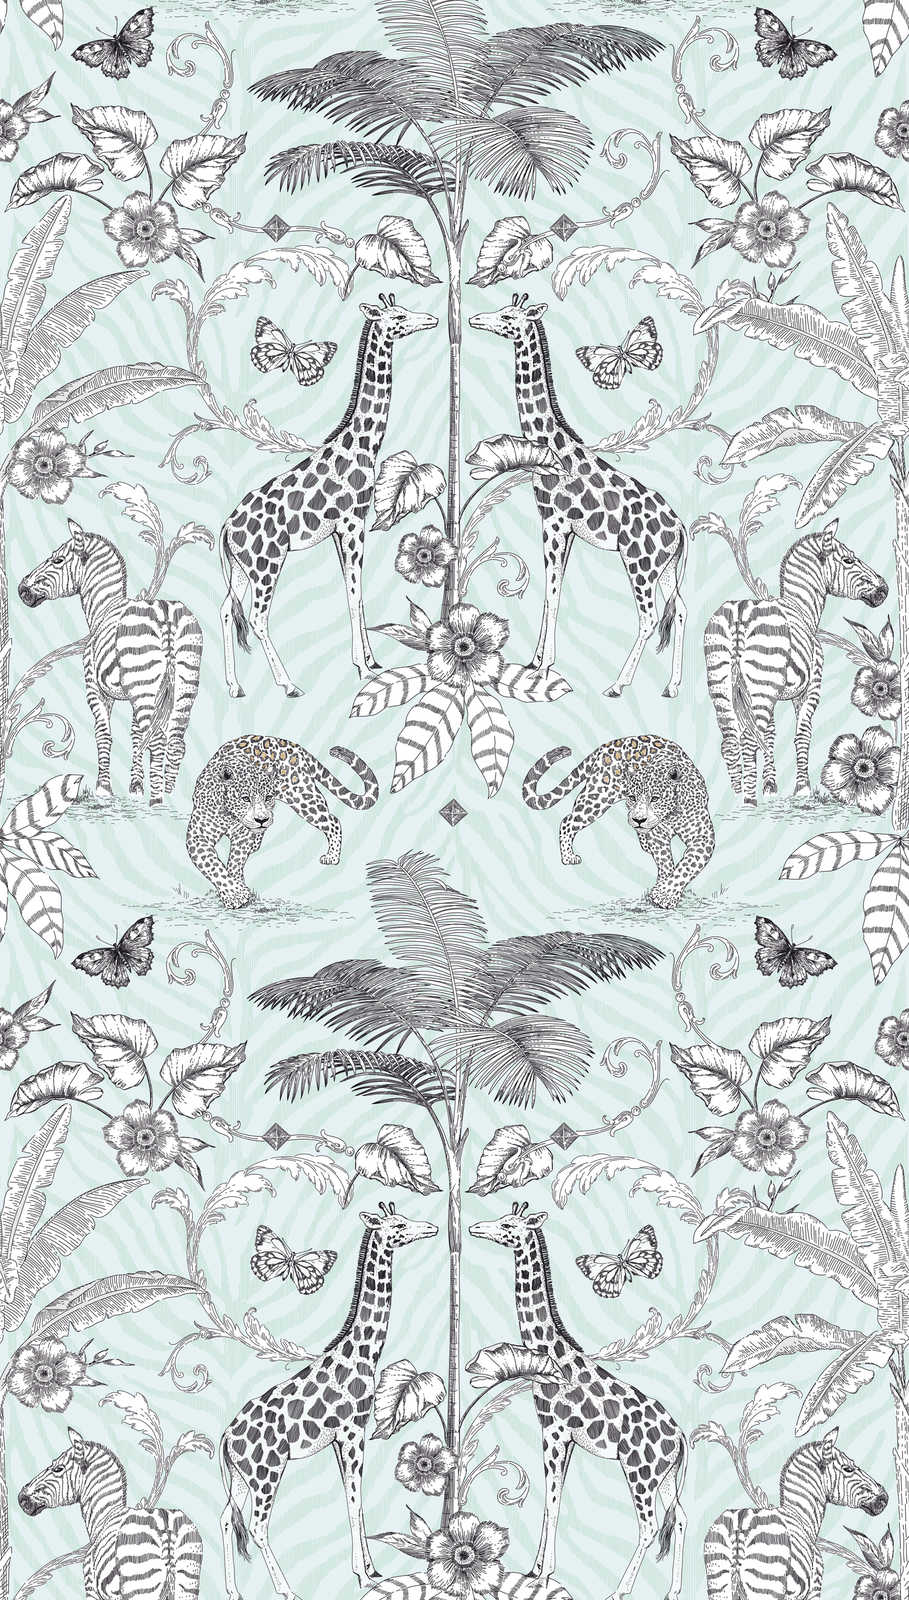             Papel pintado no tejido motivo jungla con animales y plantas - negro, blanco, gris
        